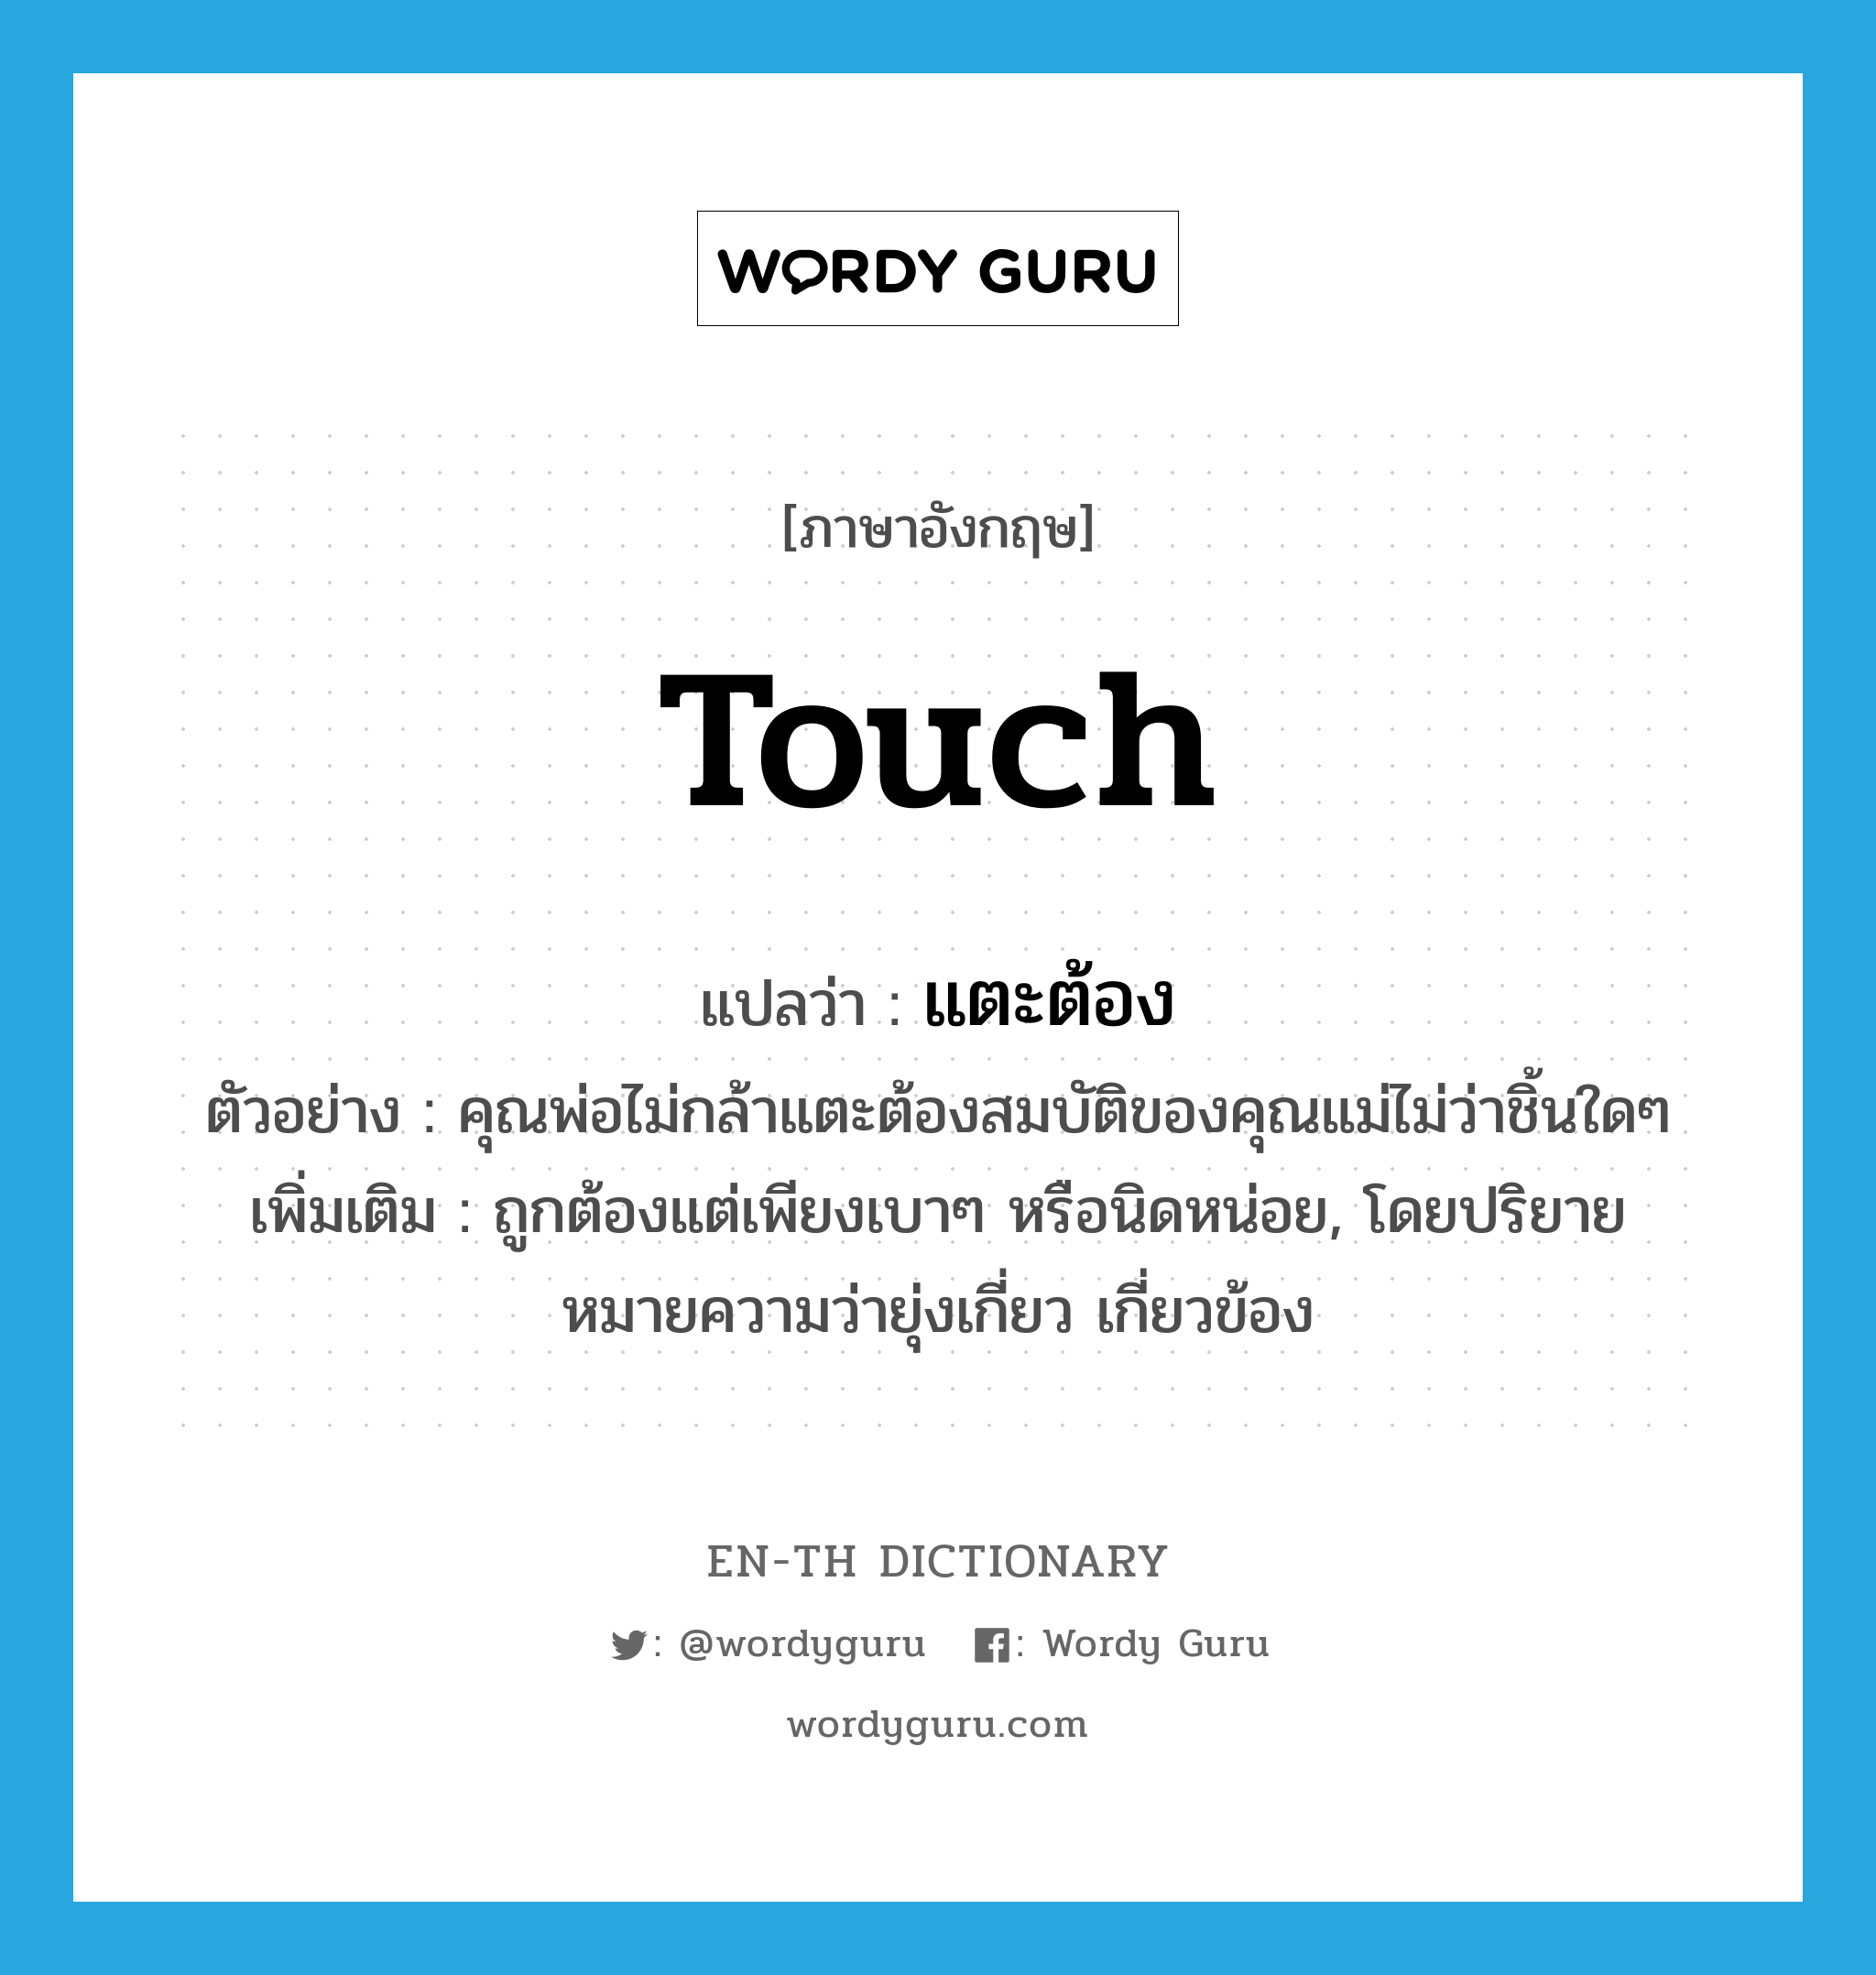 touch แปลว่า?, คำศัพท์ภาษาอังกฤษ touch แปลว่า แตะต้อง ประเภท V ตัวอย่าง คุณพ่อไม่กล้าแตะต้องสมบัติของคุณแม่ไม่ว่าชิ้นใดๆ เพิ่มเติม ถูกต้องแต่เพียงเบาๆ หรือนิดหน่อย, โดยปริยายหมายความว่ายุ่งเกี่ยว เกี่ยวข้อง หมวด V